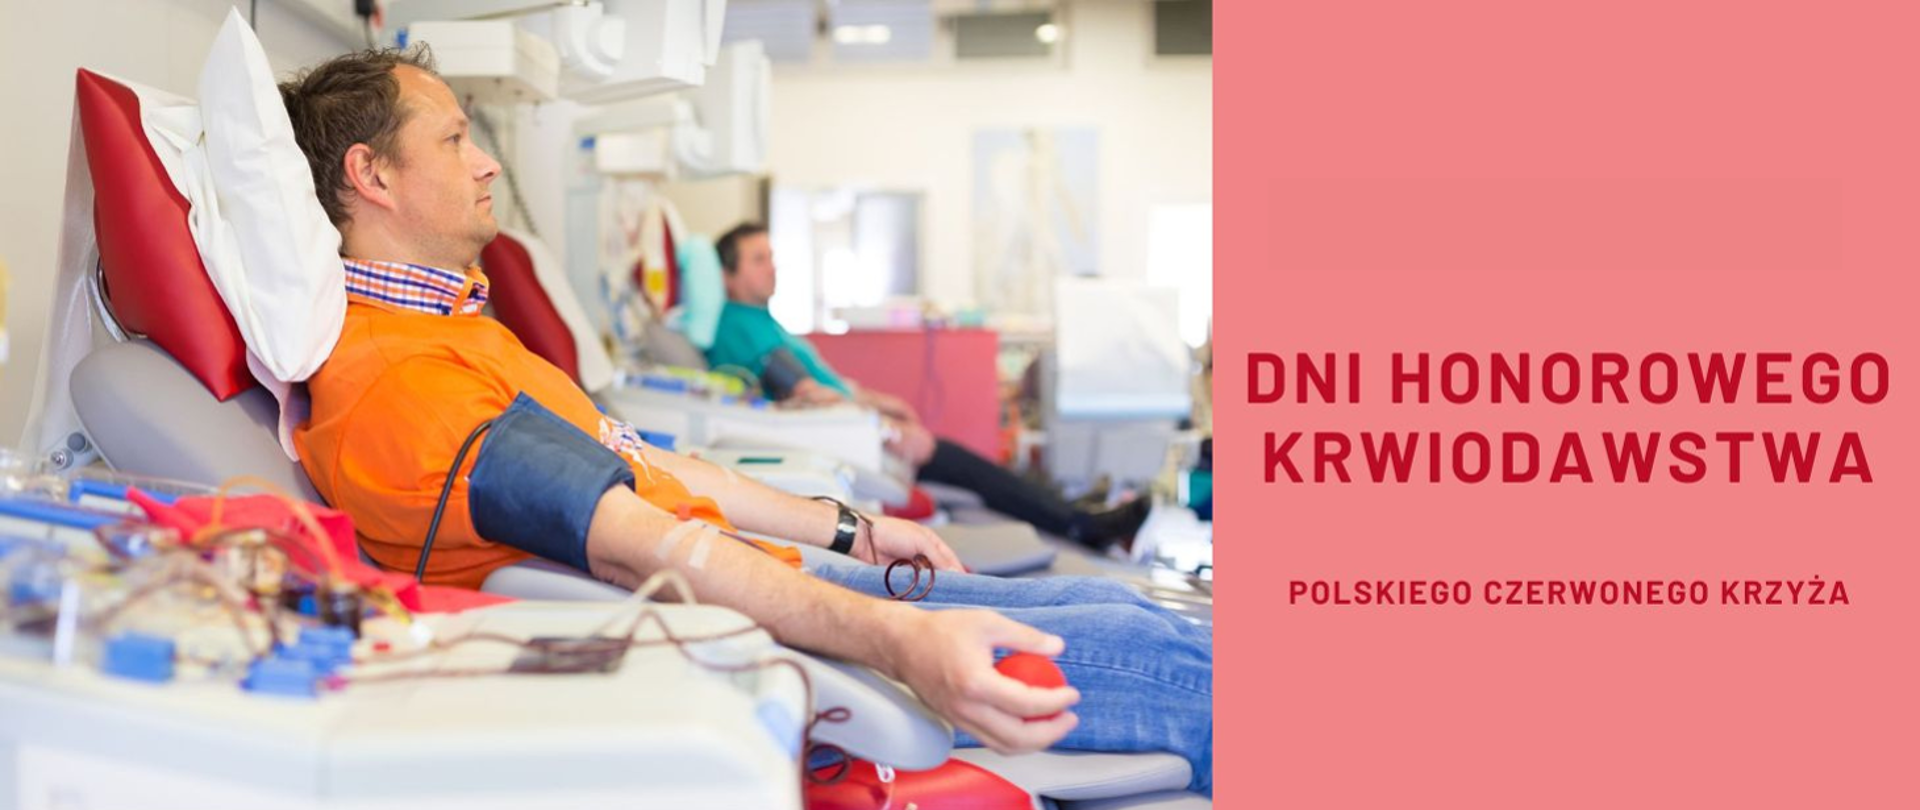 22–26 listopada Dni Honorowego Krwiodawstwa Polskiego Czerwonego Krzyża